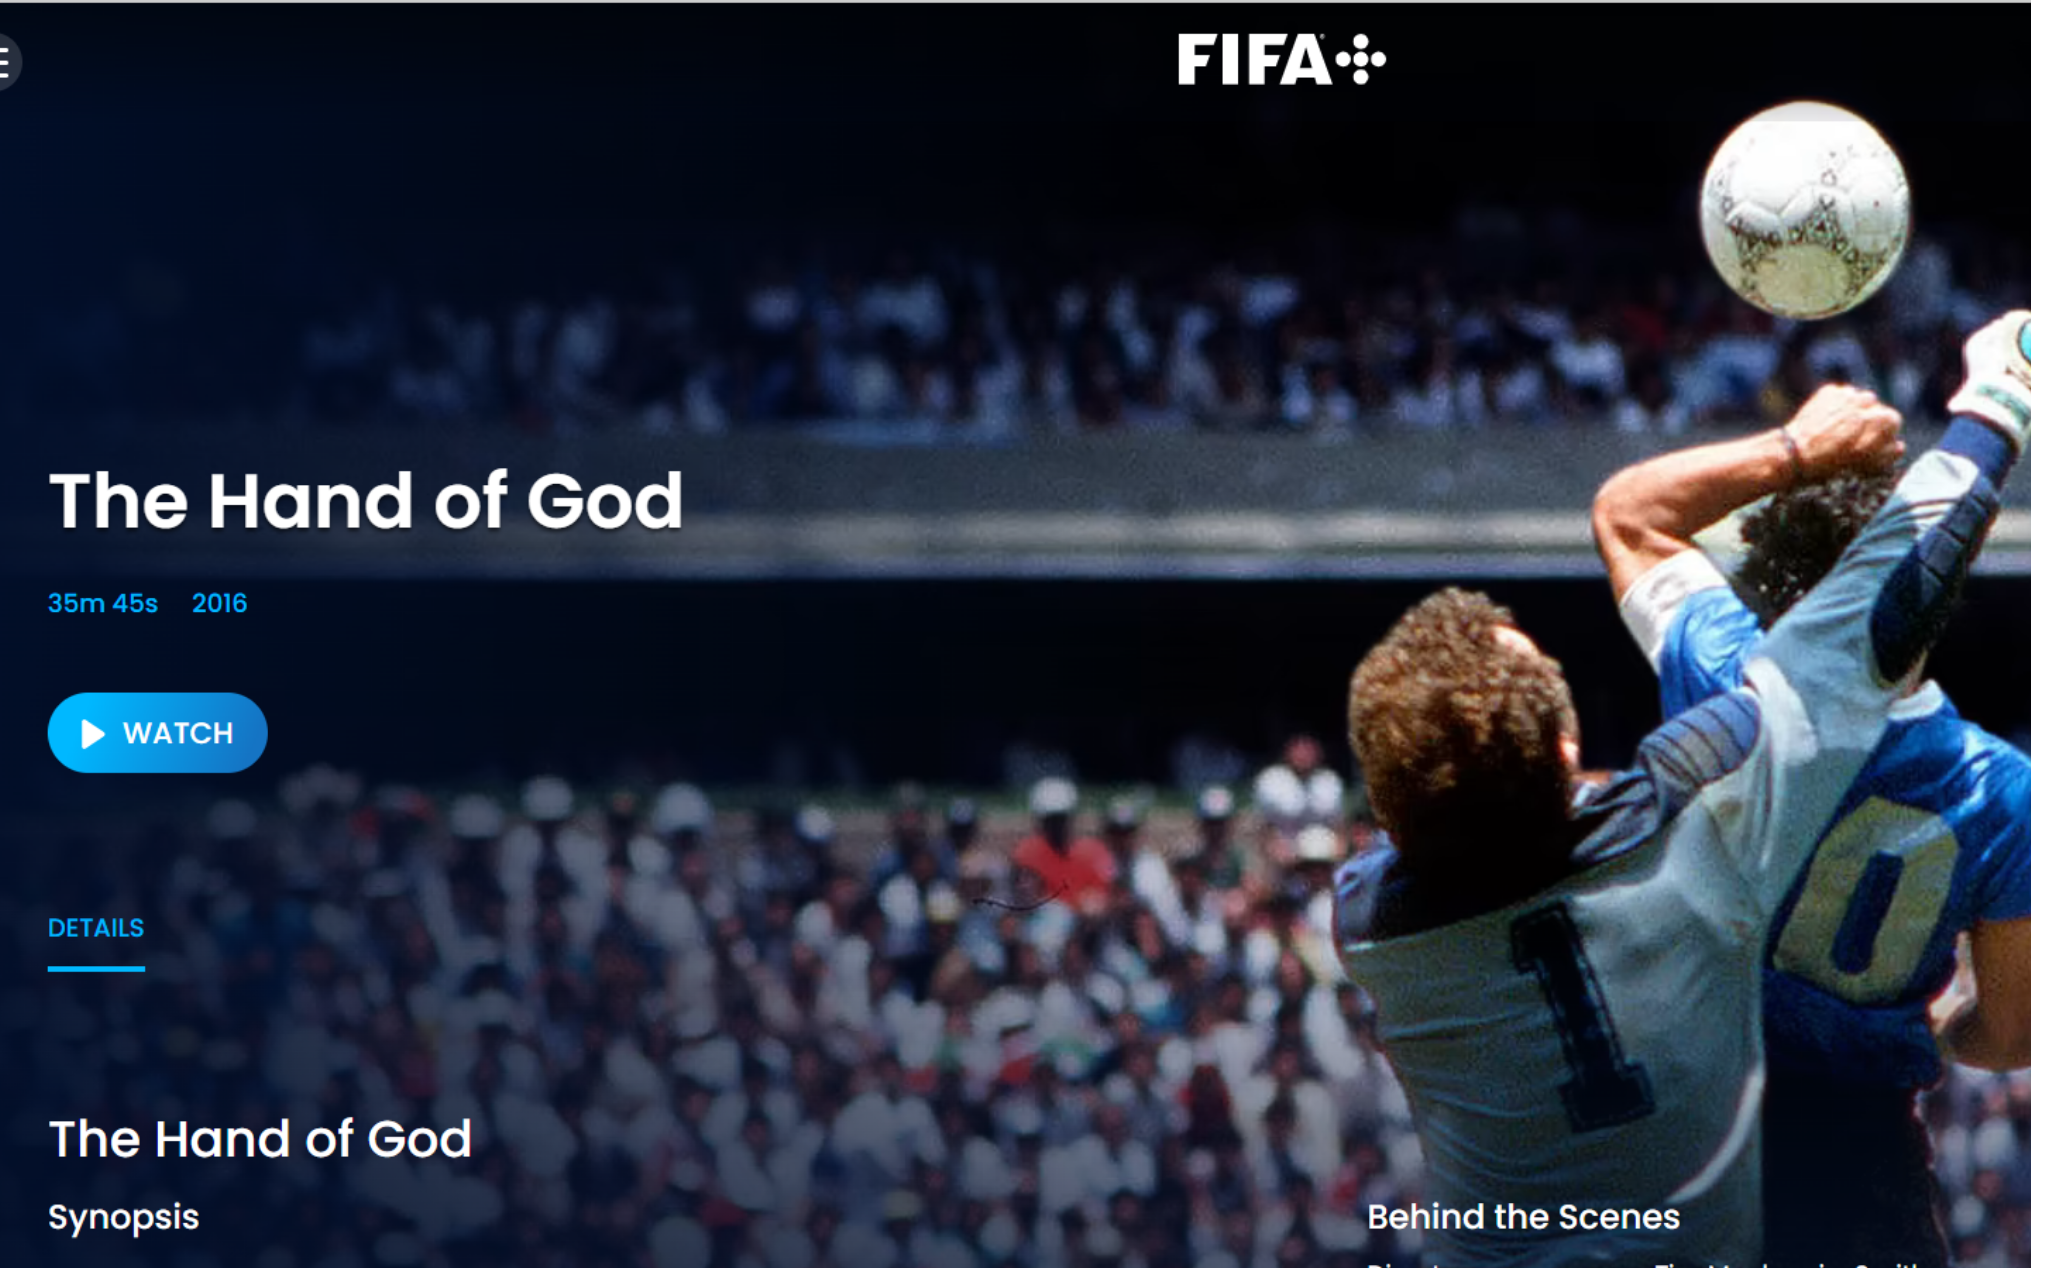 Trải nghiệm nhanh với FIFA+: Kho nội dung khổng lồ về bóng đá nhưng chưa đặc sắc lắm